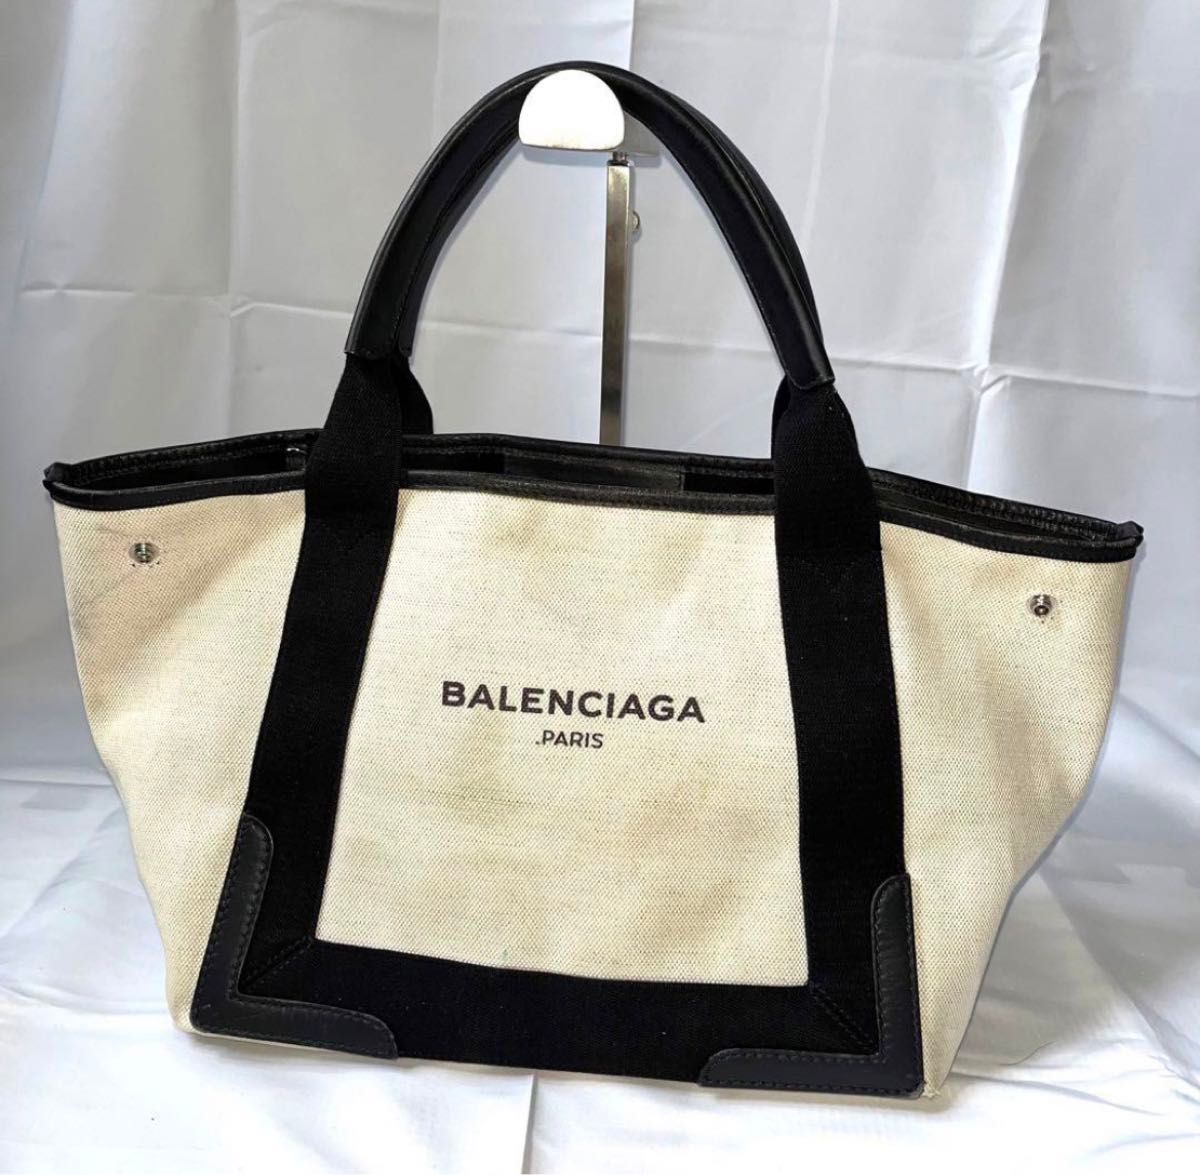 BALENCIAGA トートバッグ カバス キャンバス 白 ホワイト ブラック バレンシアガ